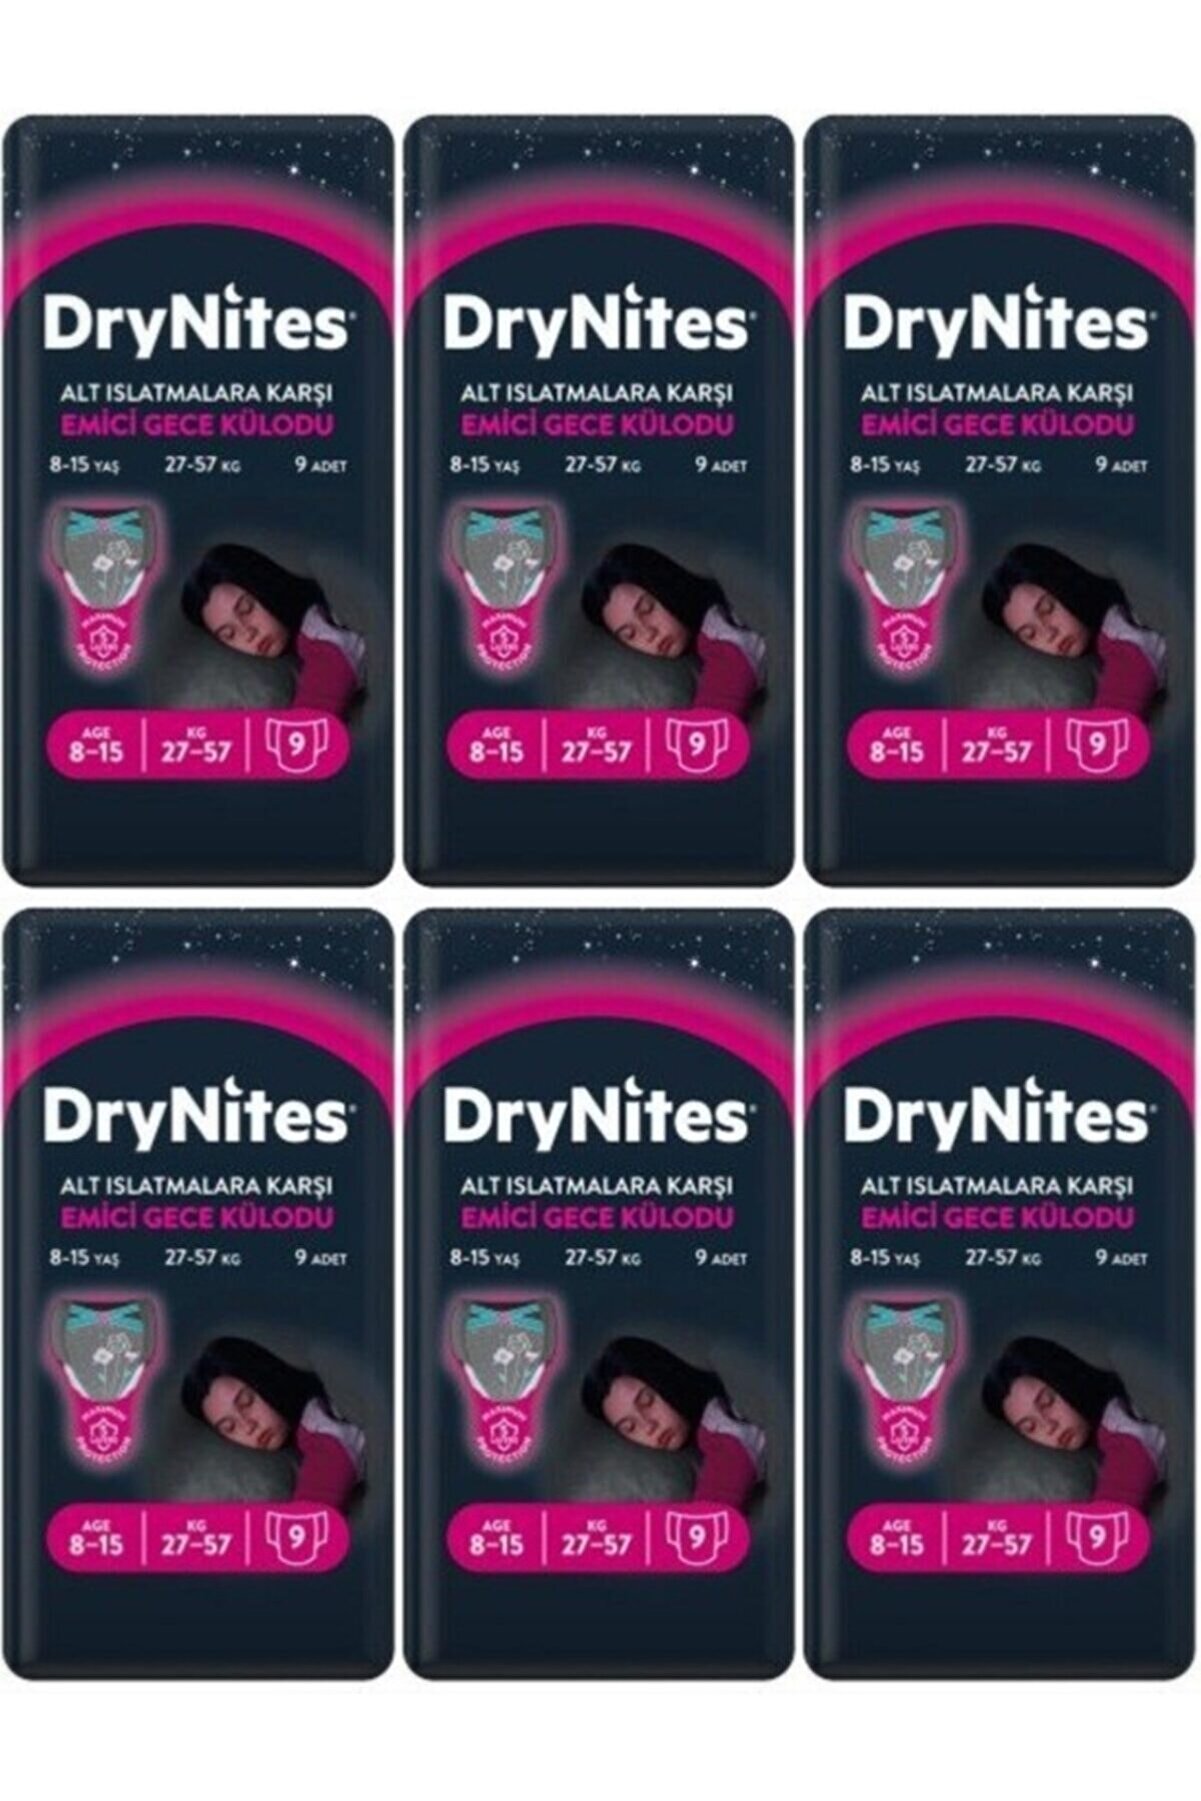 Huggies Drynites Kız Emici Gece Külodu 8-15 Yaş 54 Adet